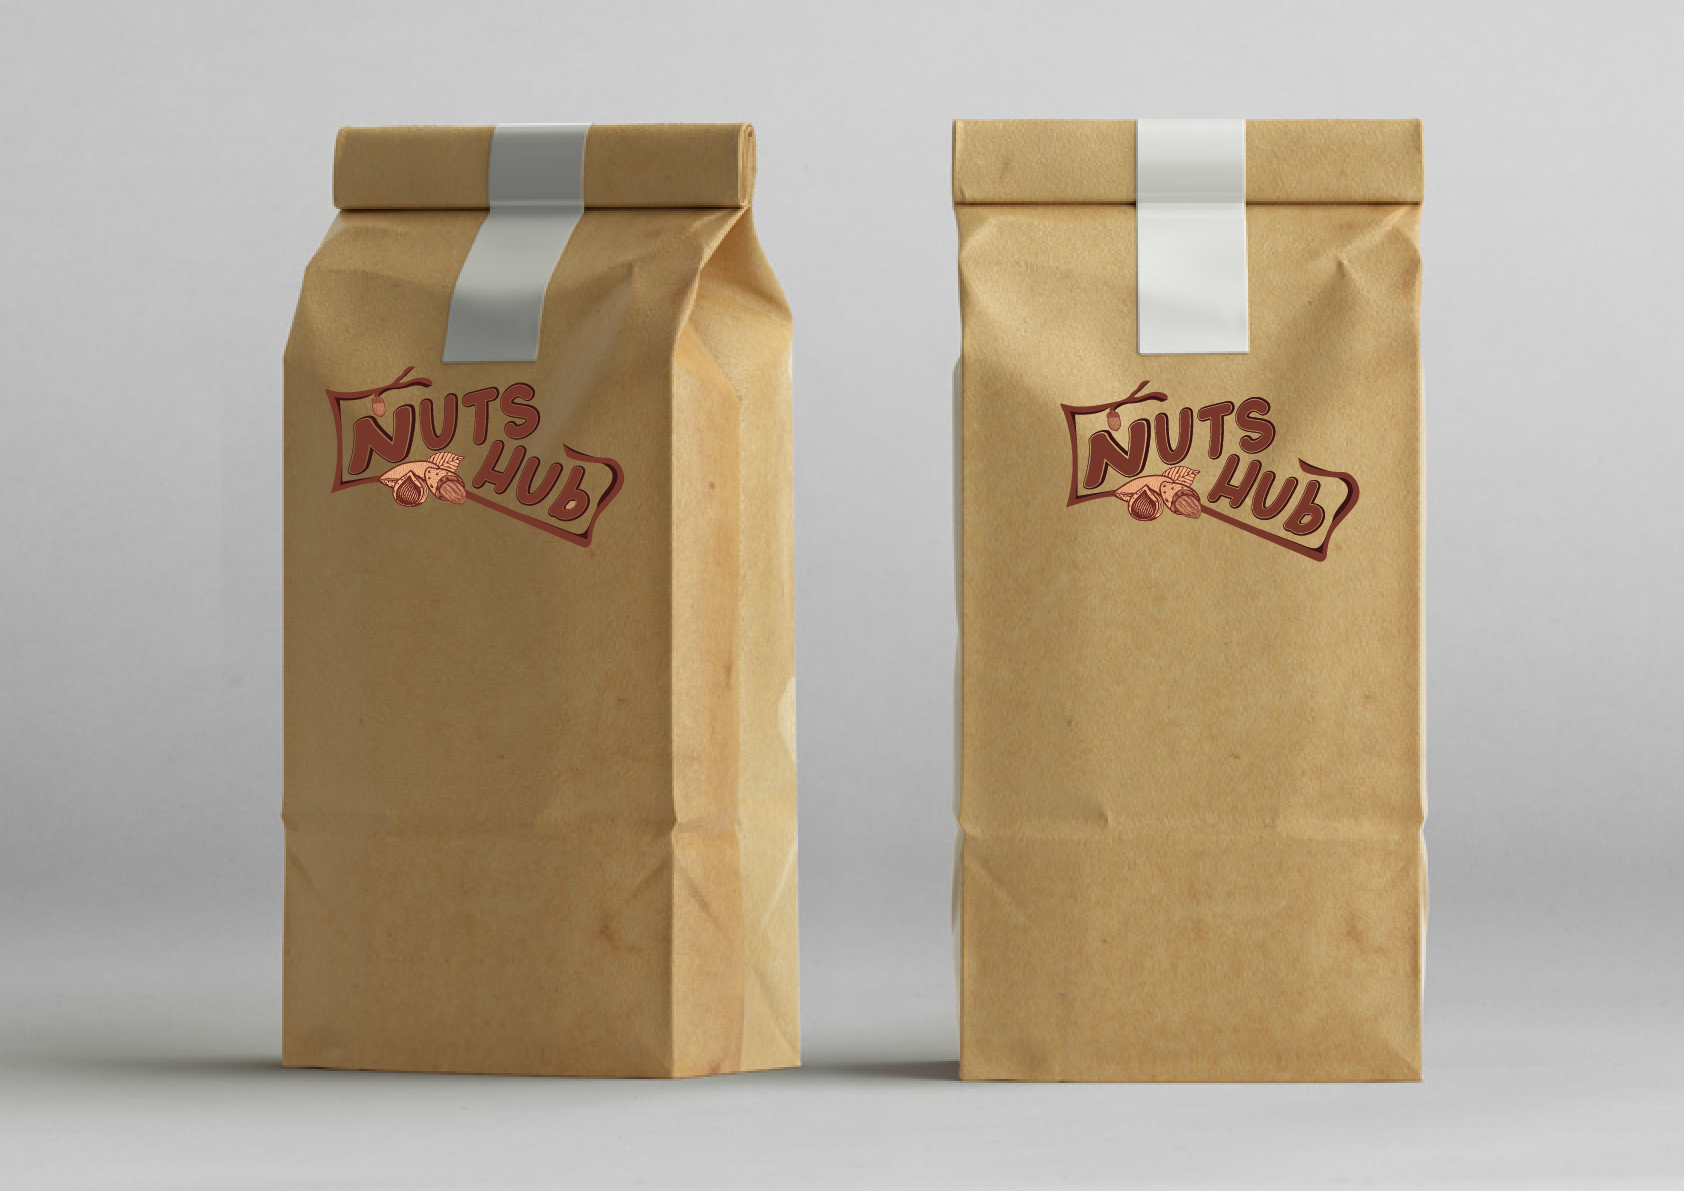 Packaging bags